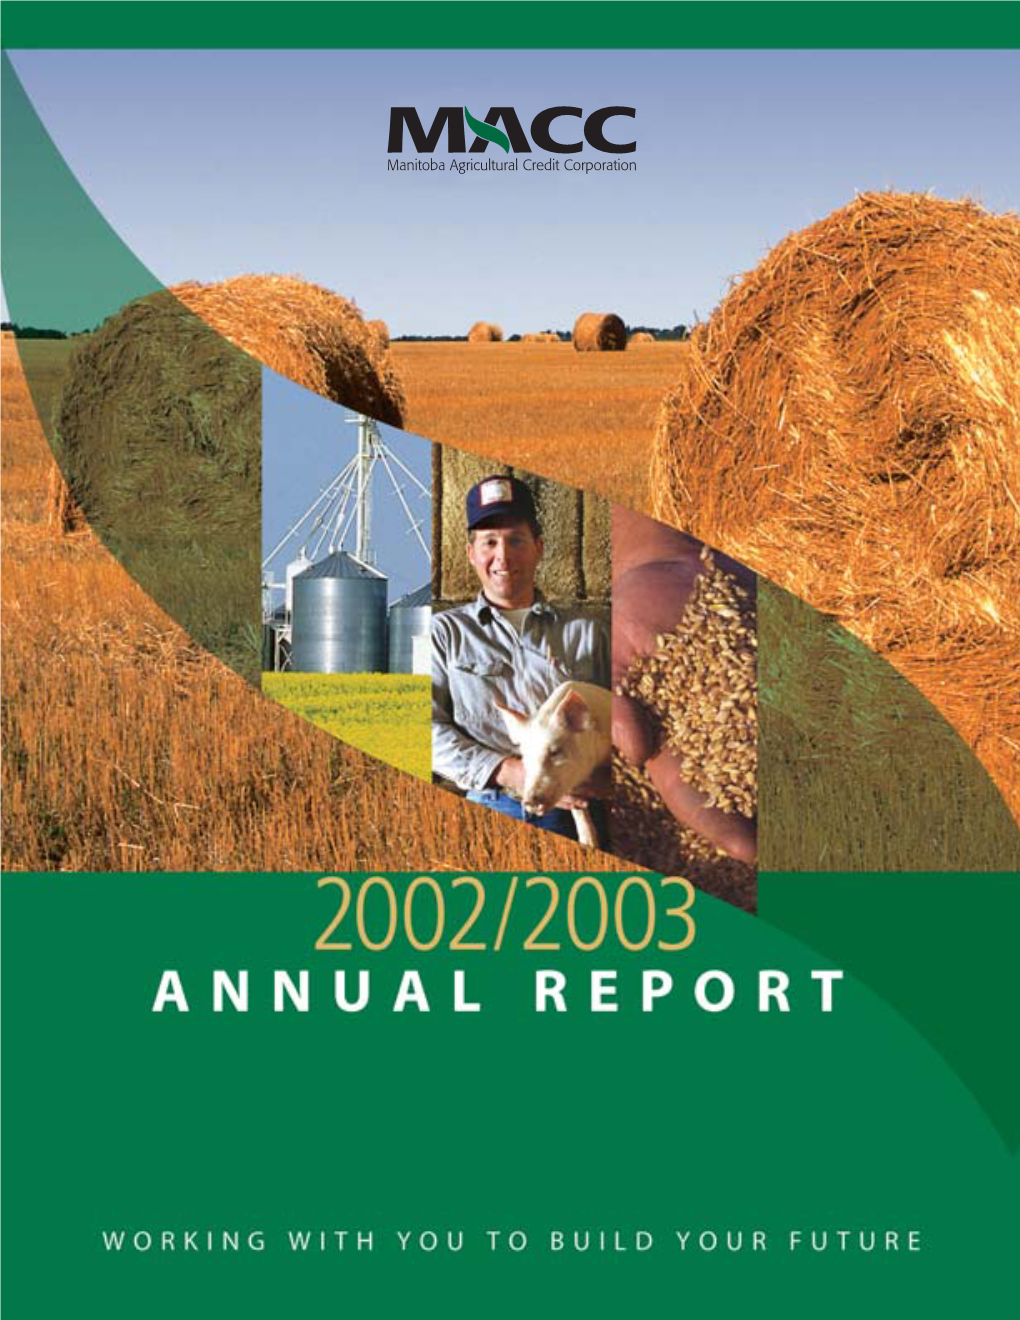 MACC Annual Report 2002/03